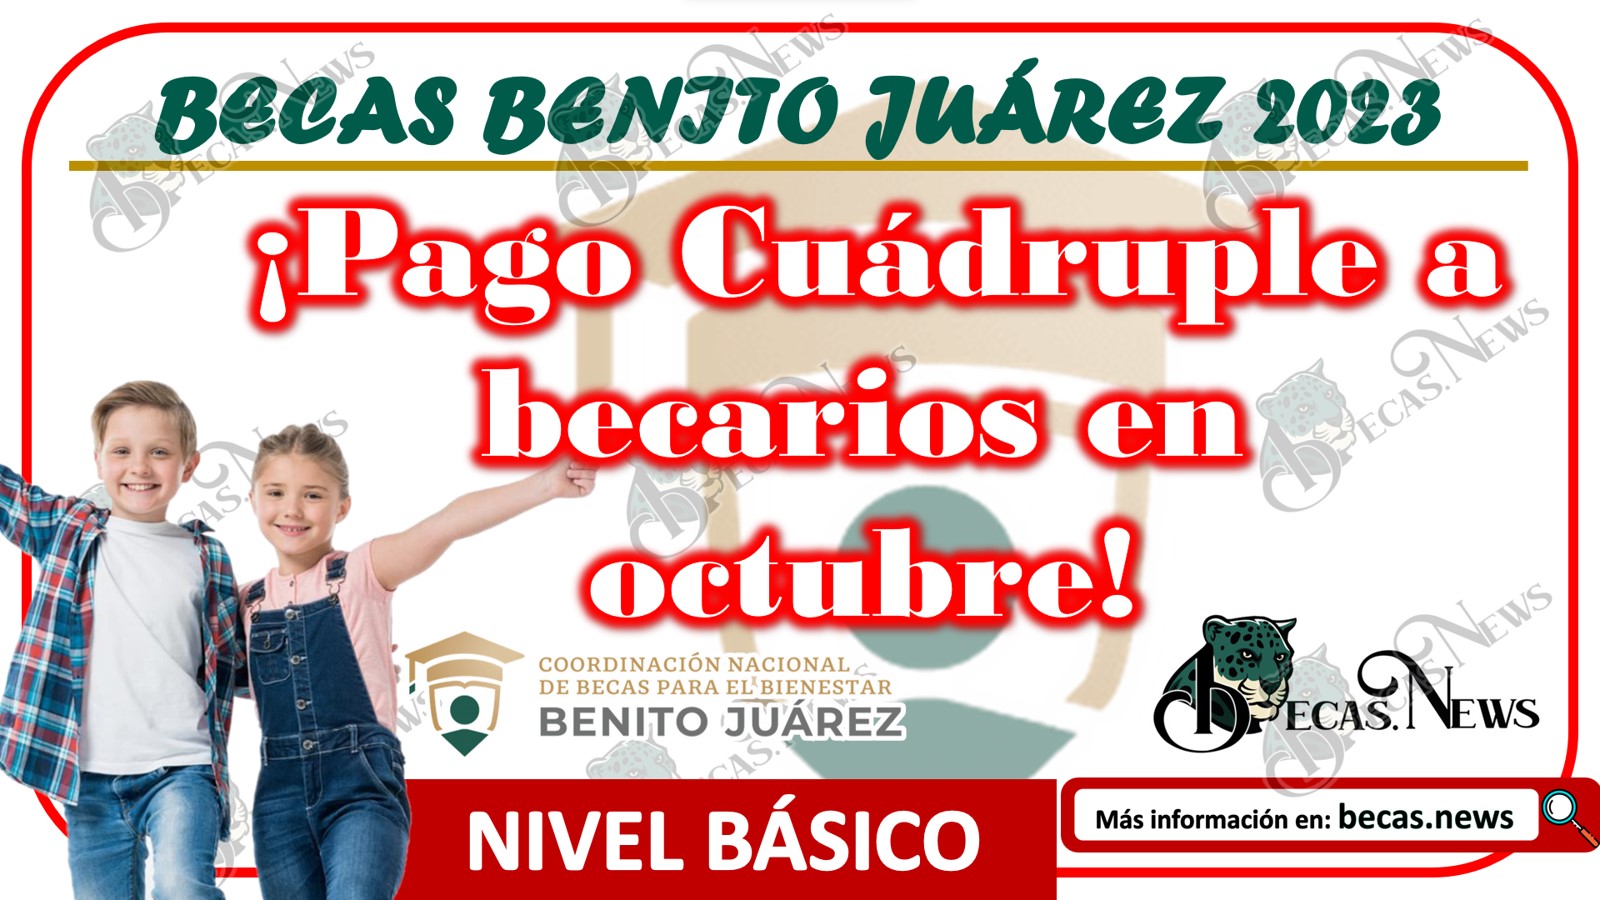 Beca Benito Juárez 2023 | ¡Pago Cuádruple a becarios en octubre!